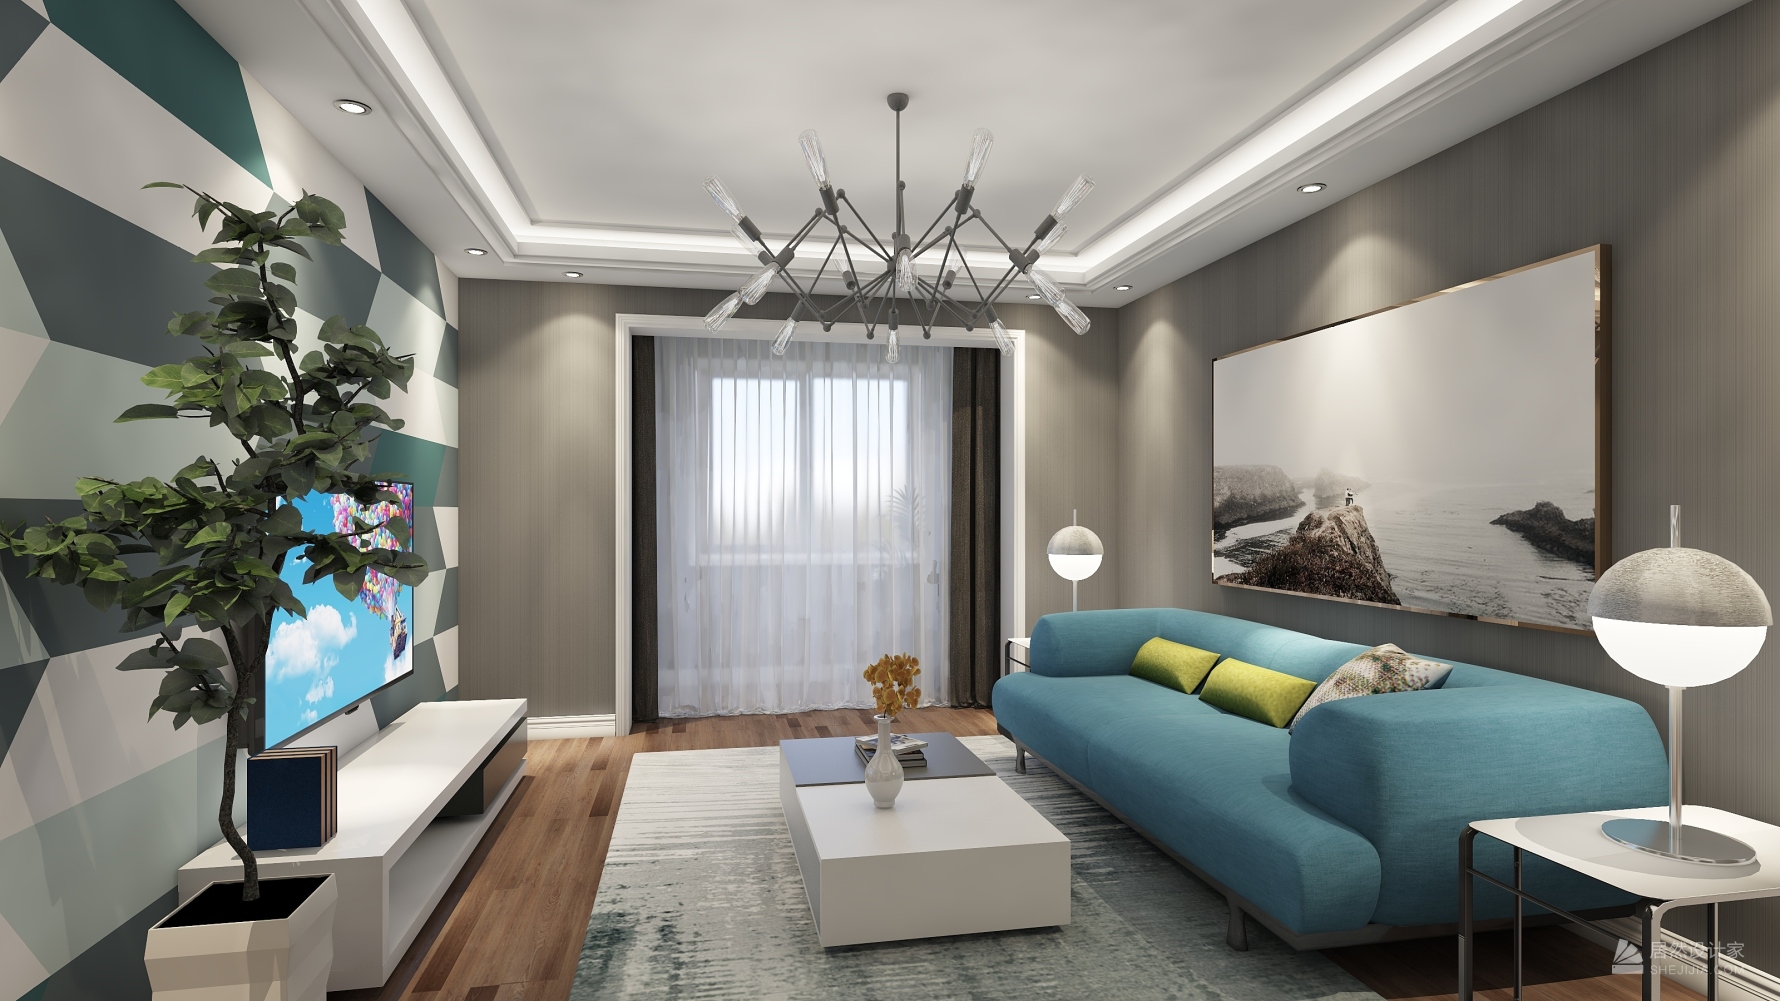 白色奢华 - 欧式风格三室一厅装修效果图 - jushangmeijia124设计效果图 - 每平每屋·设计家